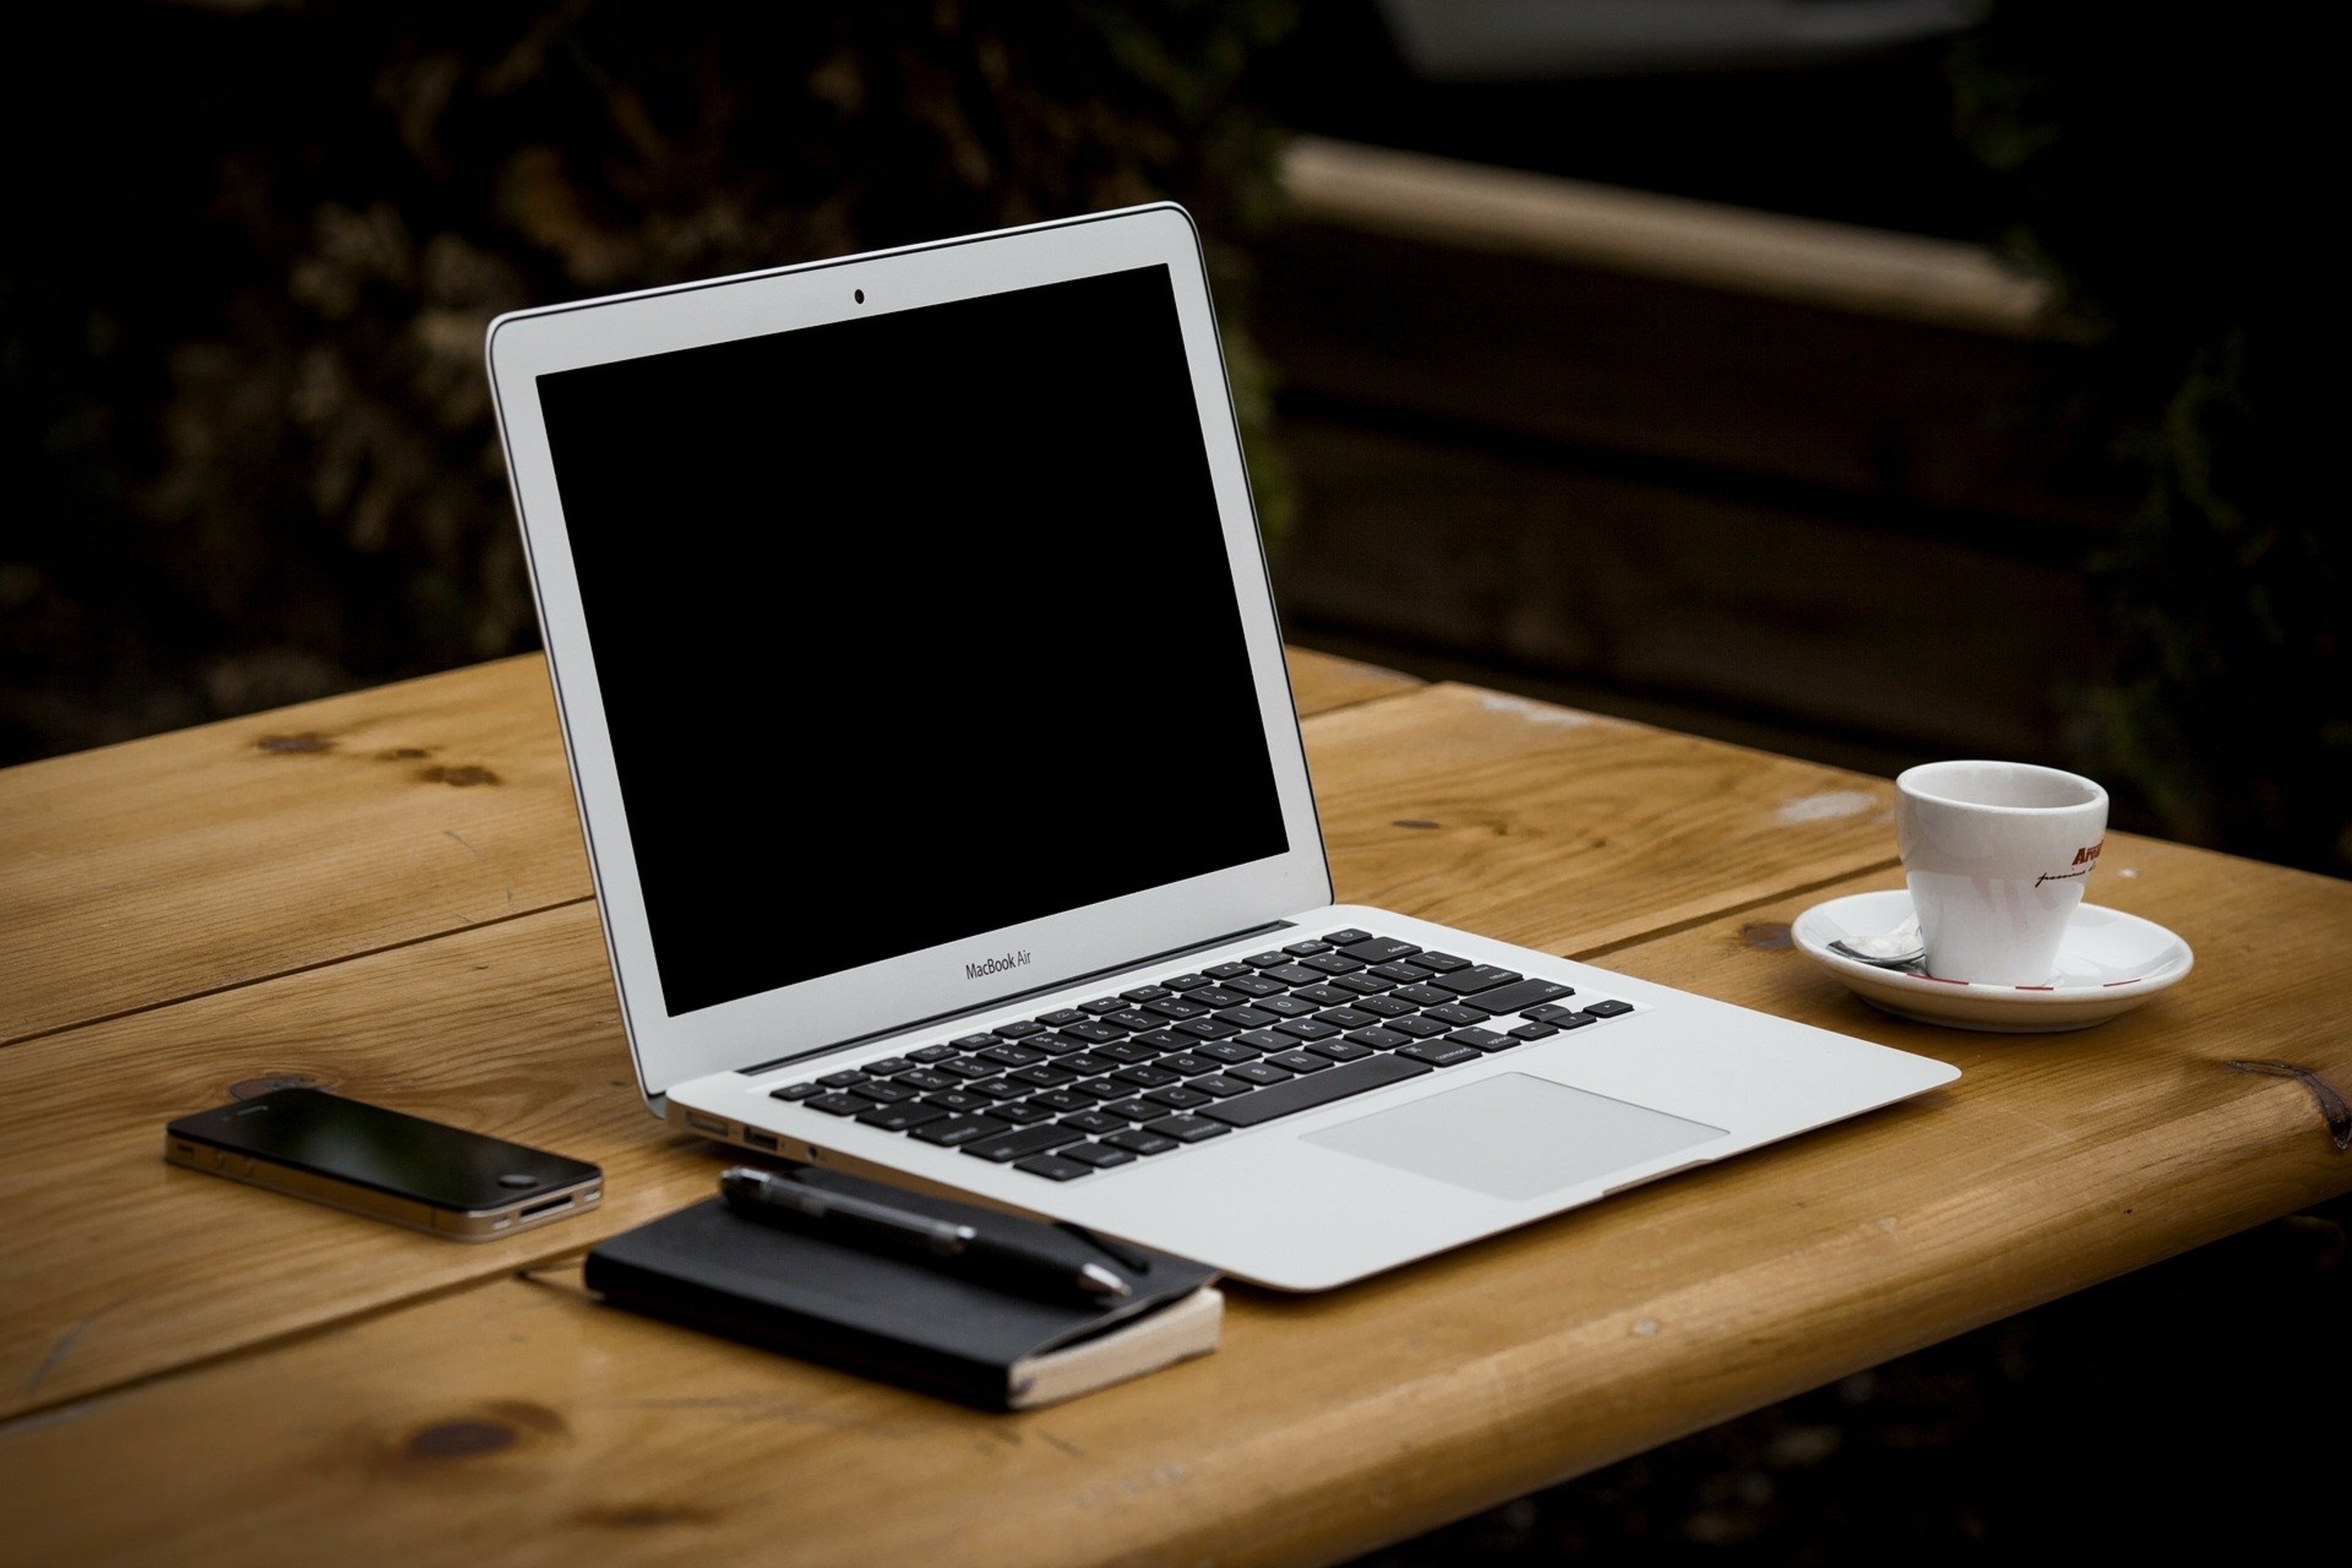 Laptop mit Tasse, Block, Stift und Handy